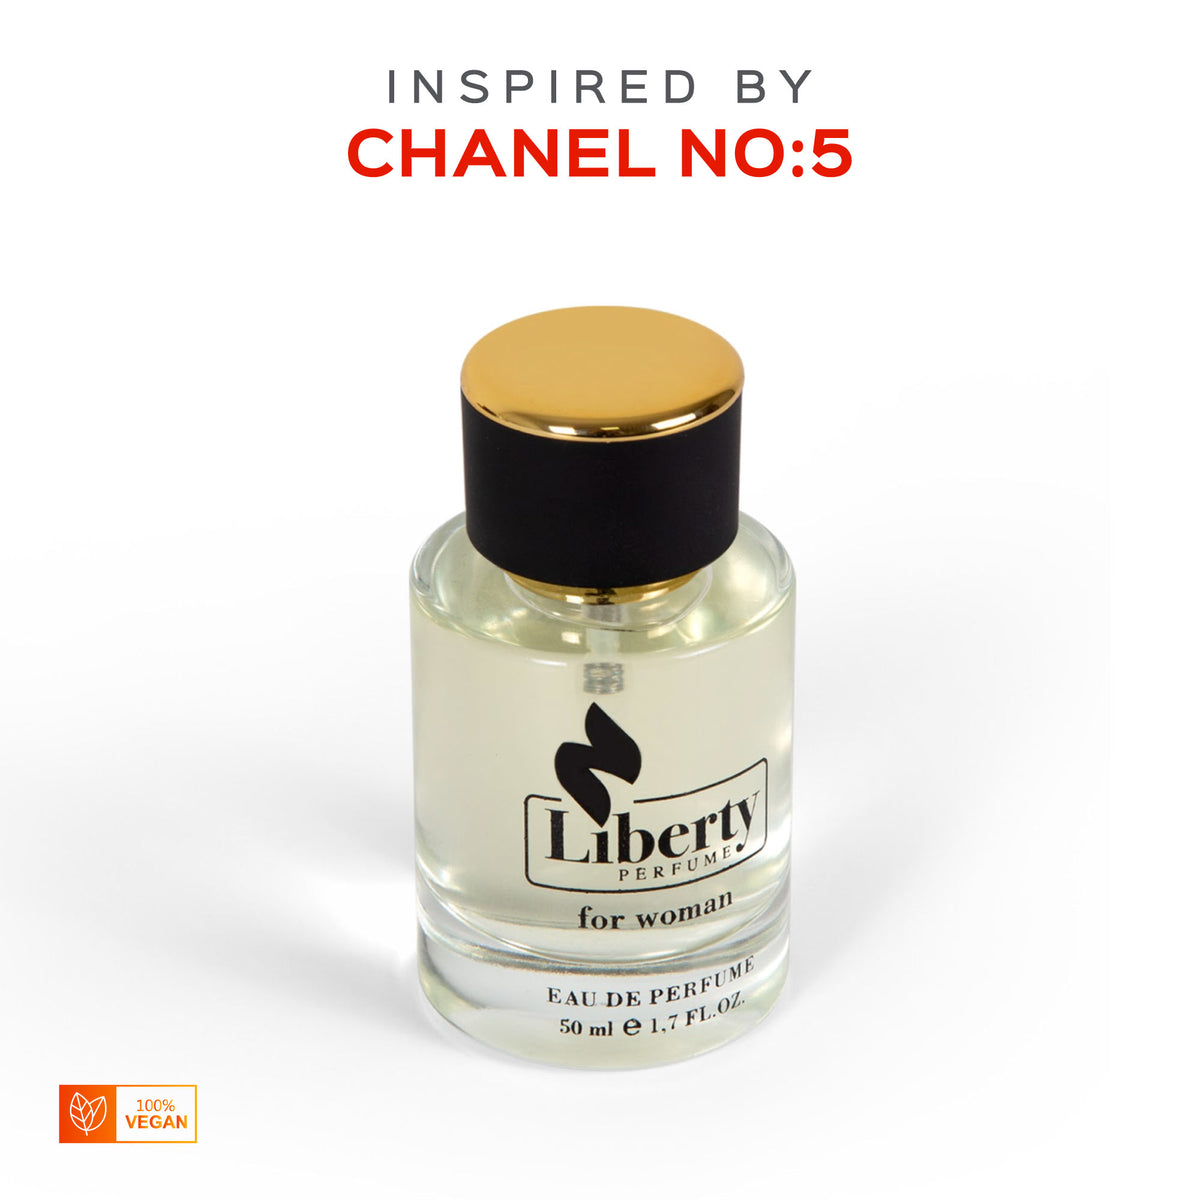 Chanel Gabrielle : Perfume Review - Bois de Jasmin